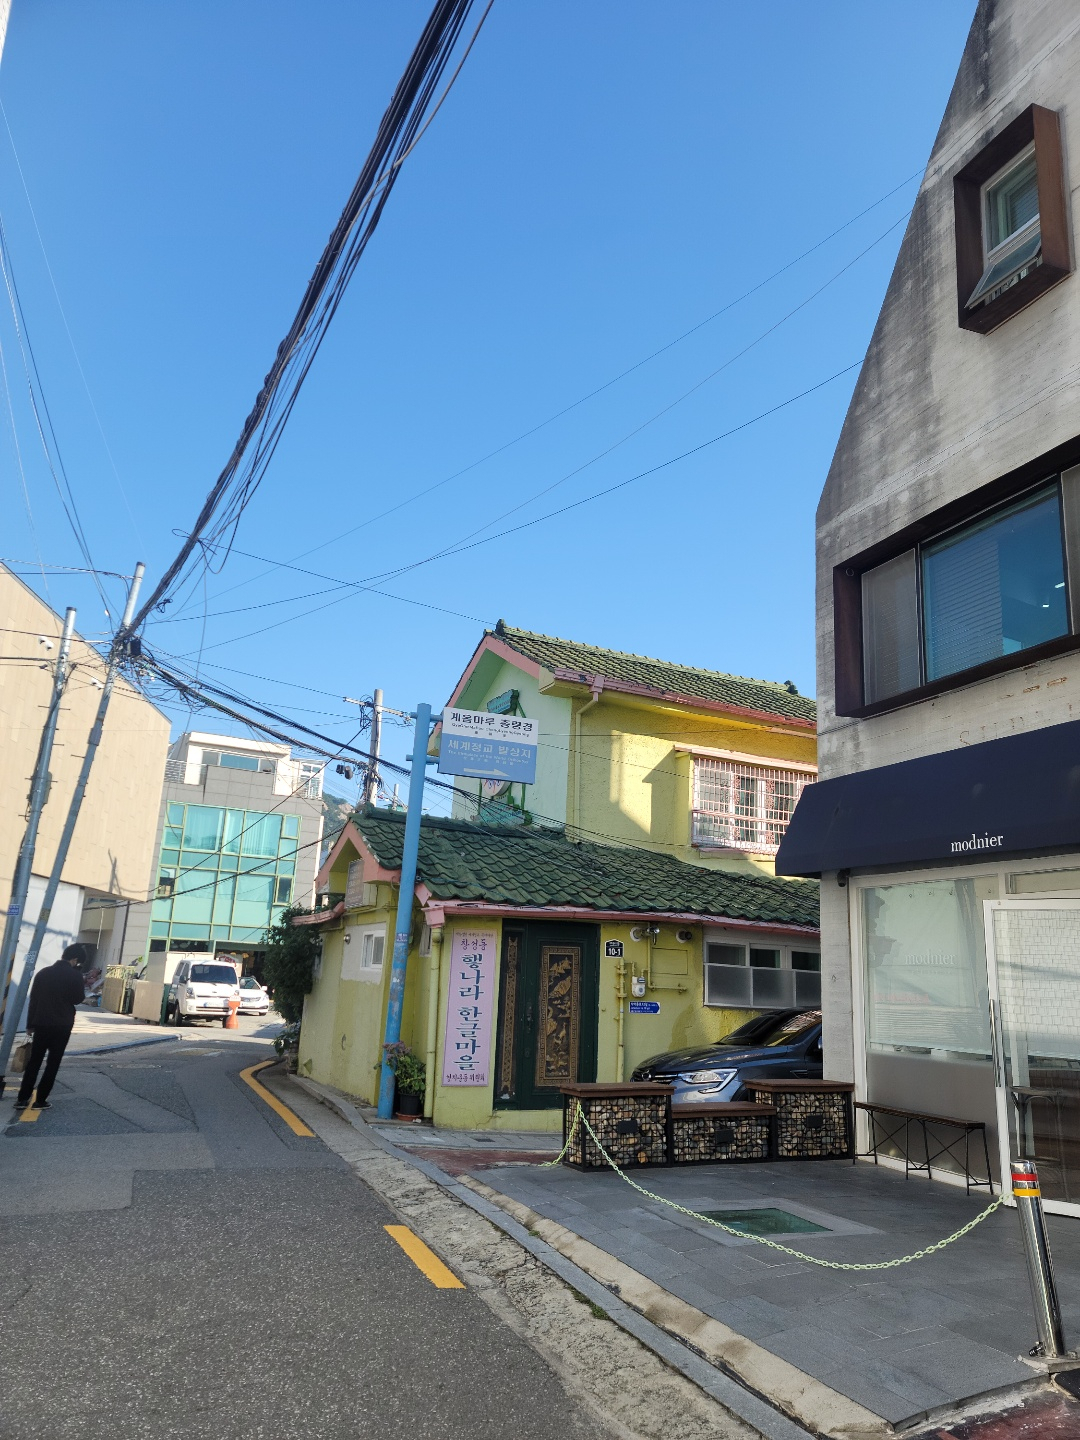 서울 종로구 창성동의 한 건물.  당신의 어린 시절 집은 노란색 건물 옆에 있었습니다.  (창비출판사)